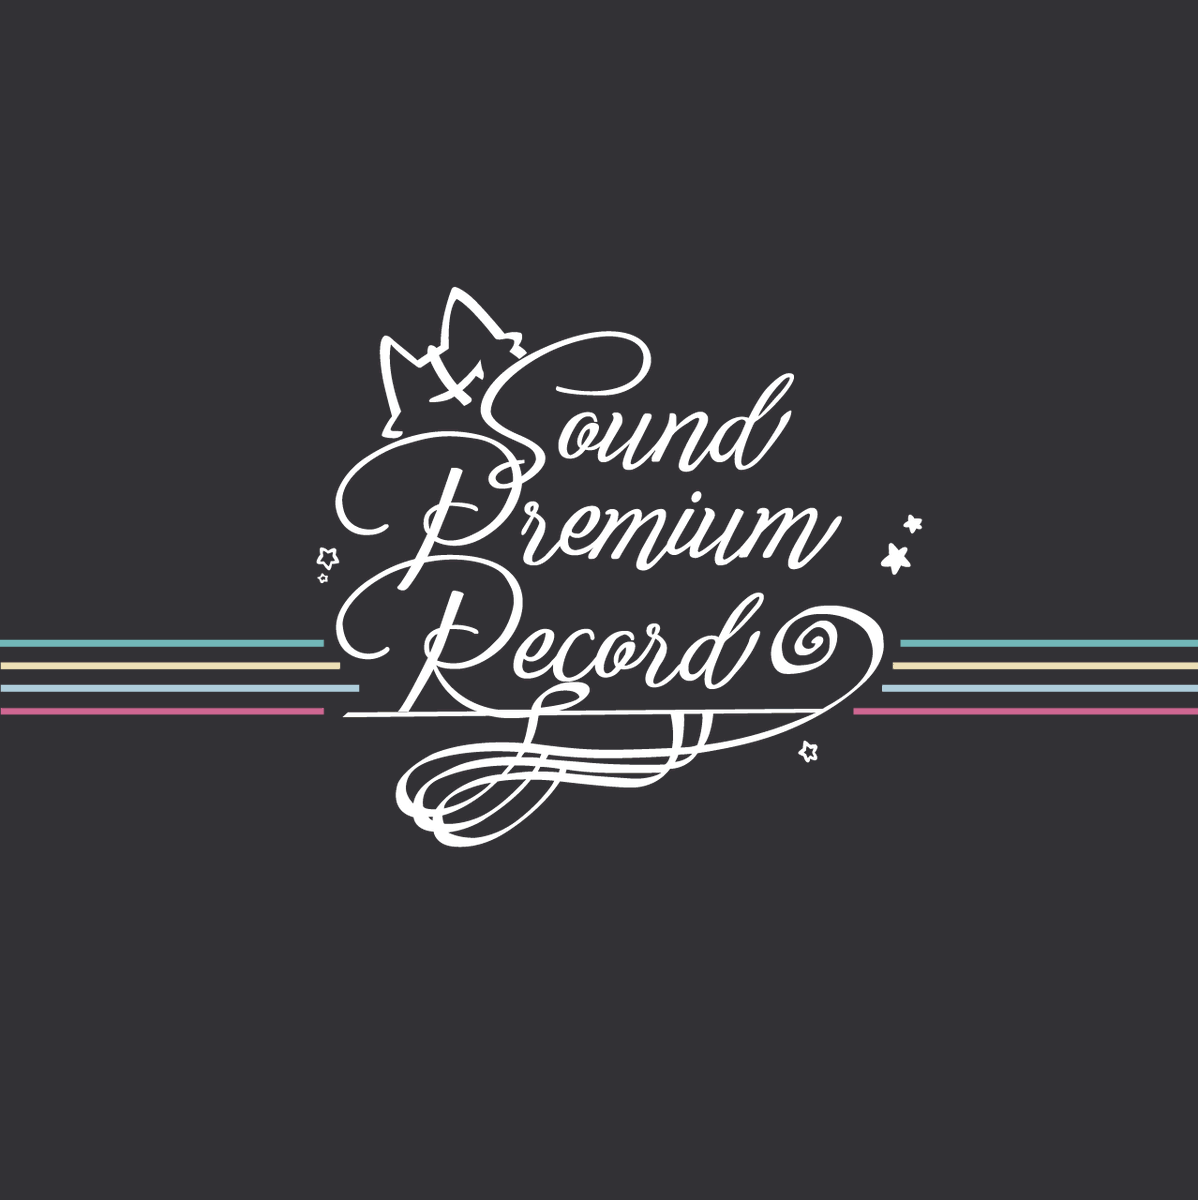 ぱれっと 9-nine- Sound Premium Record | alviar.dz